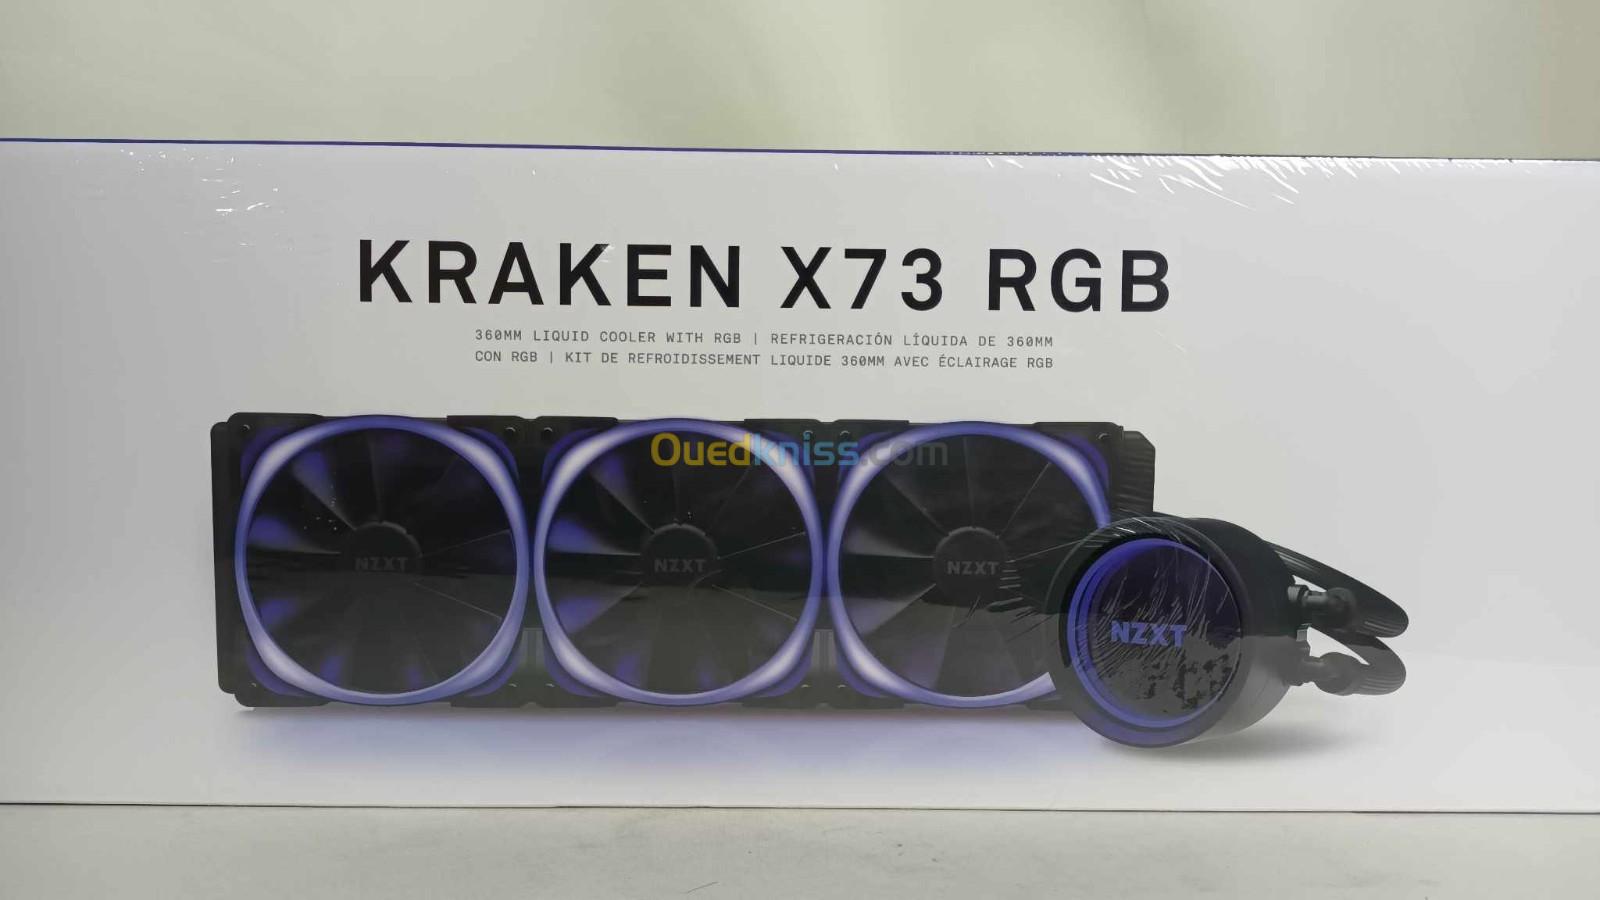 NZXT Kraken X73 Kit de Watercooling tout-en-un 360mm pour processeur avec rétroéclairage RGB